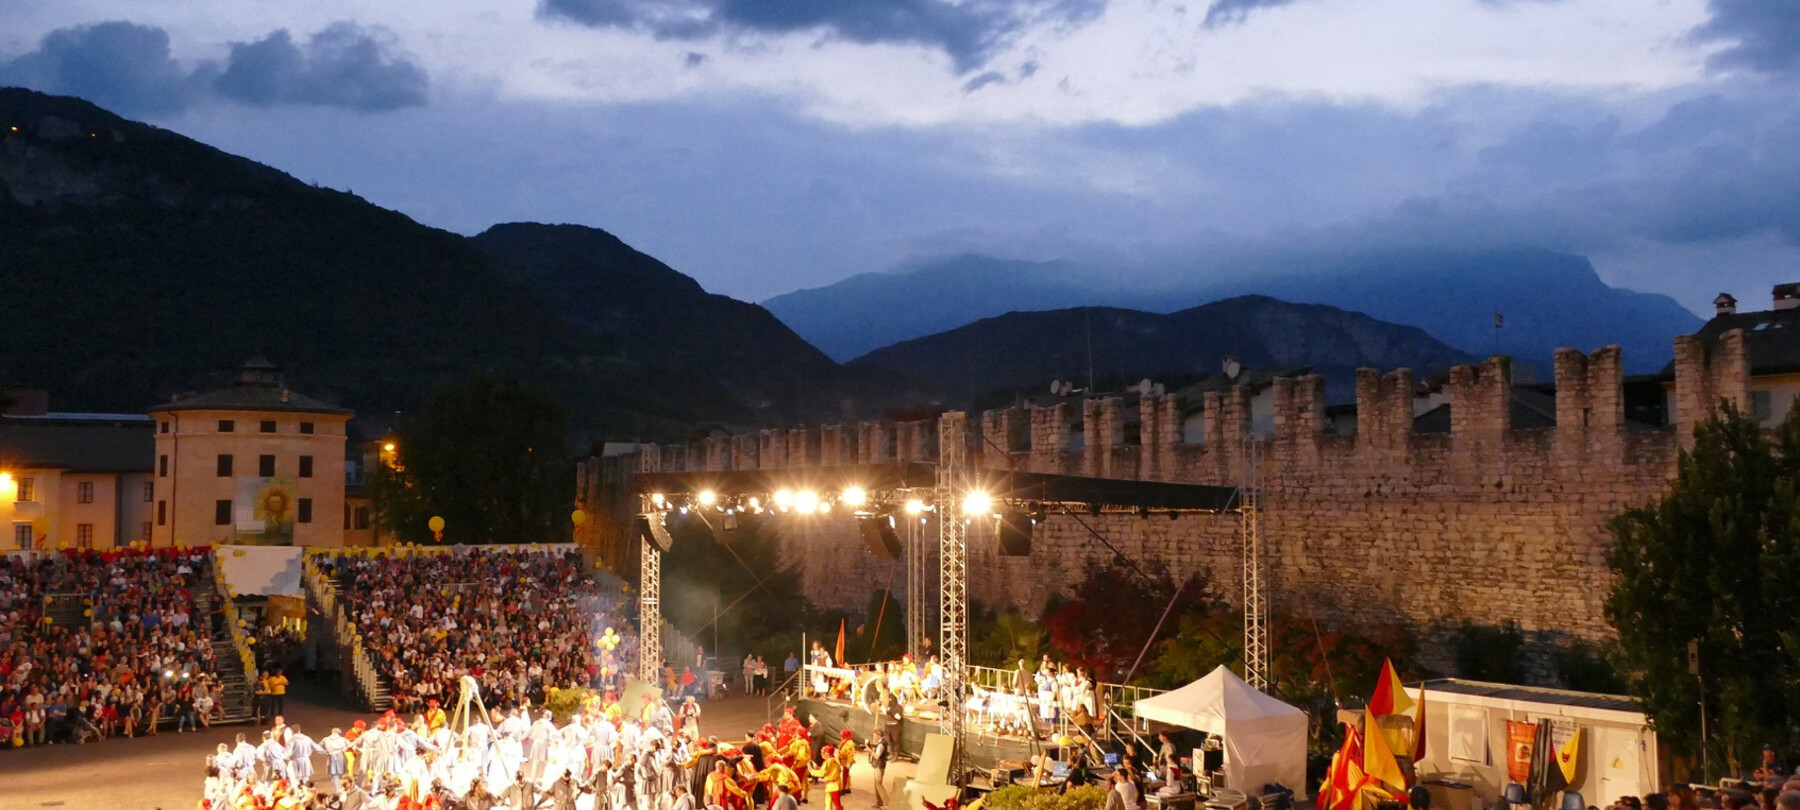 The Feste Vigiliane celebrations in honour of patron saint S. Vigilius inaugurate the Trentino summer